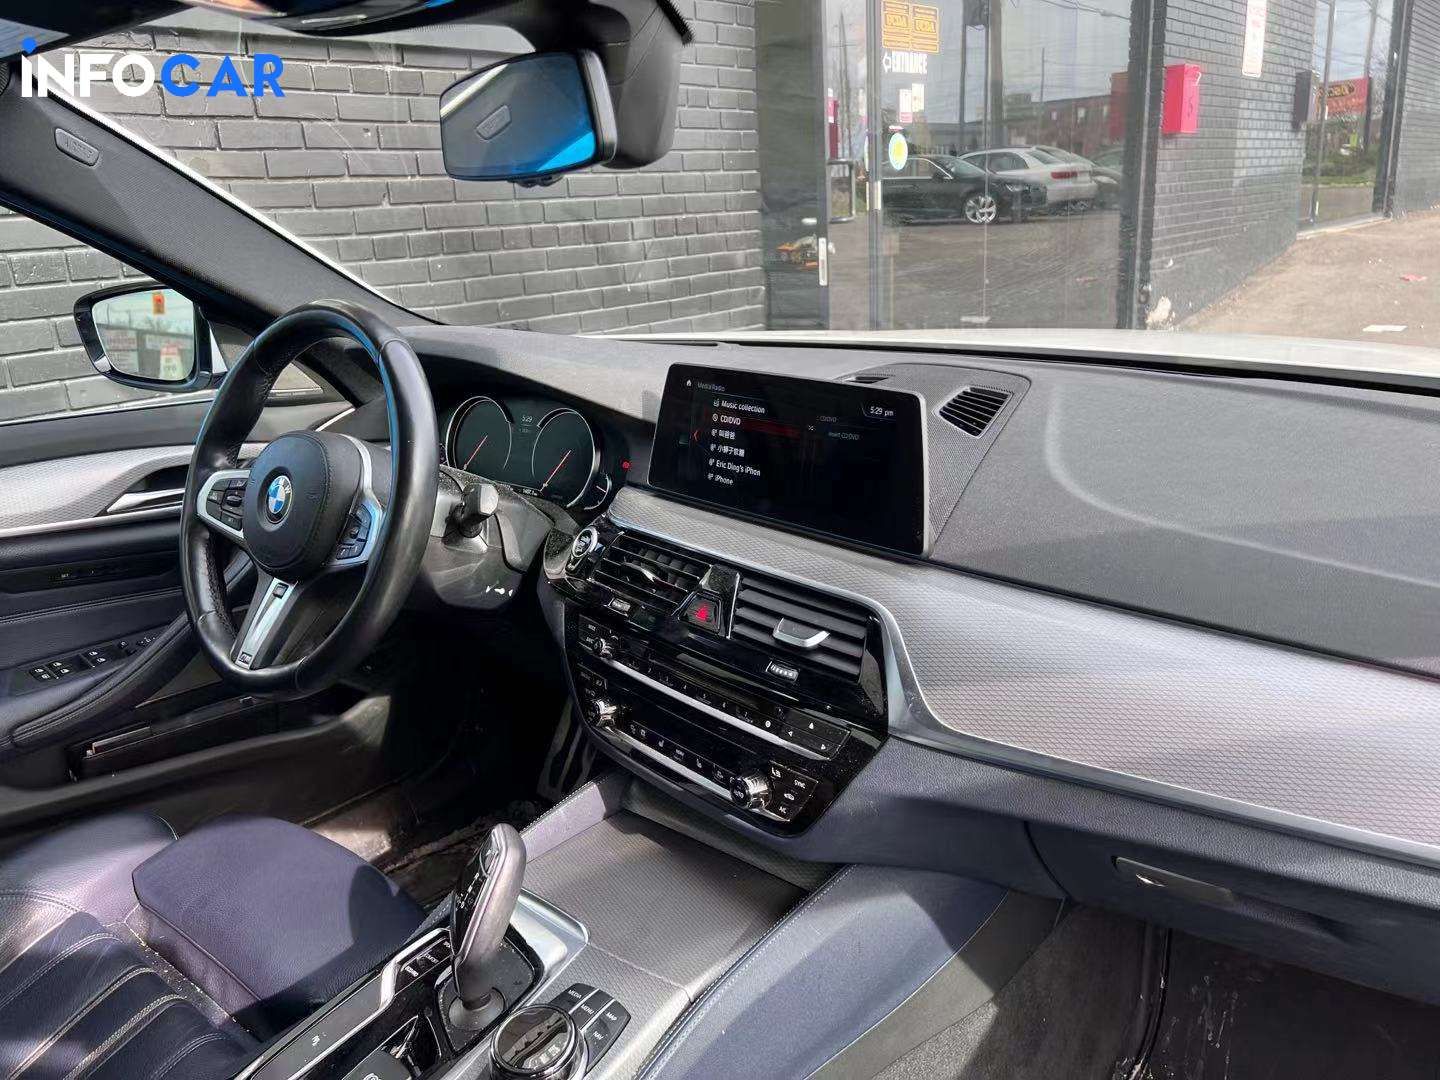 2018 BMW 5-Series 530 - INFOCAR - Toronto Auto Trading Platform